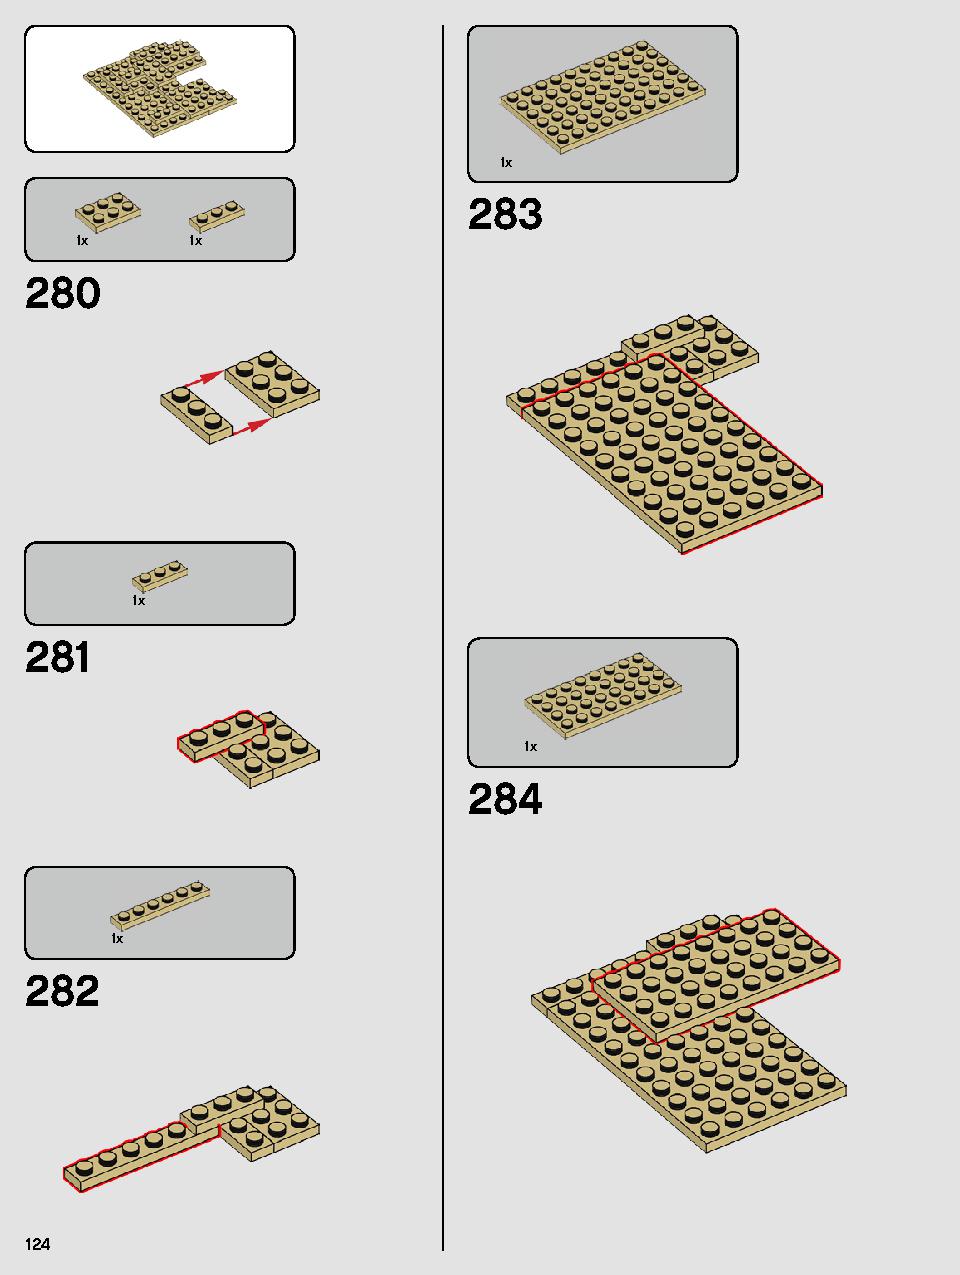 ヨーダ™ 75255 レゴの商品情報 レゴの説明書・組立方法 124 page